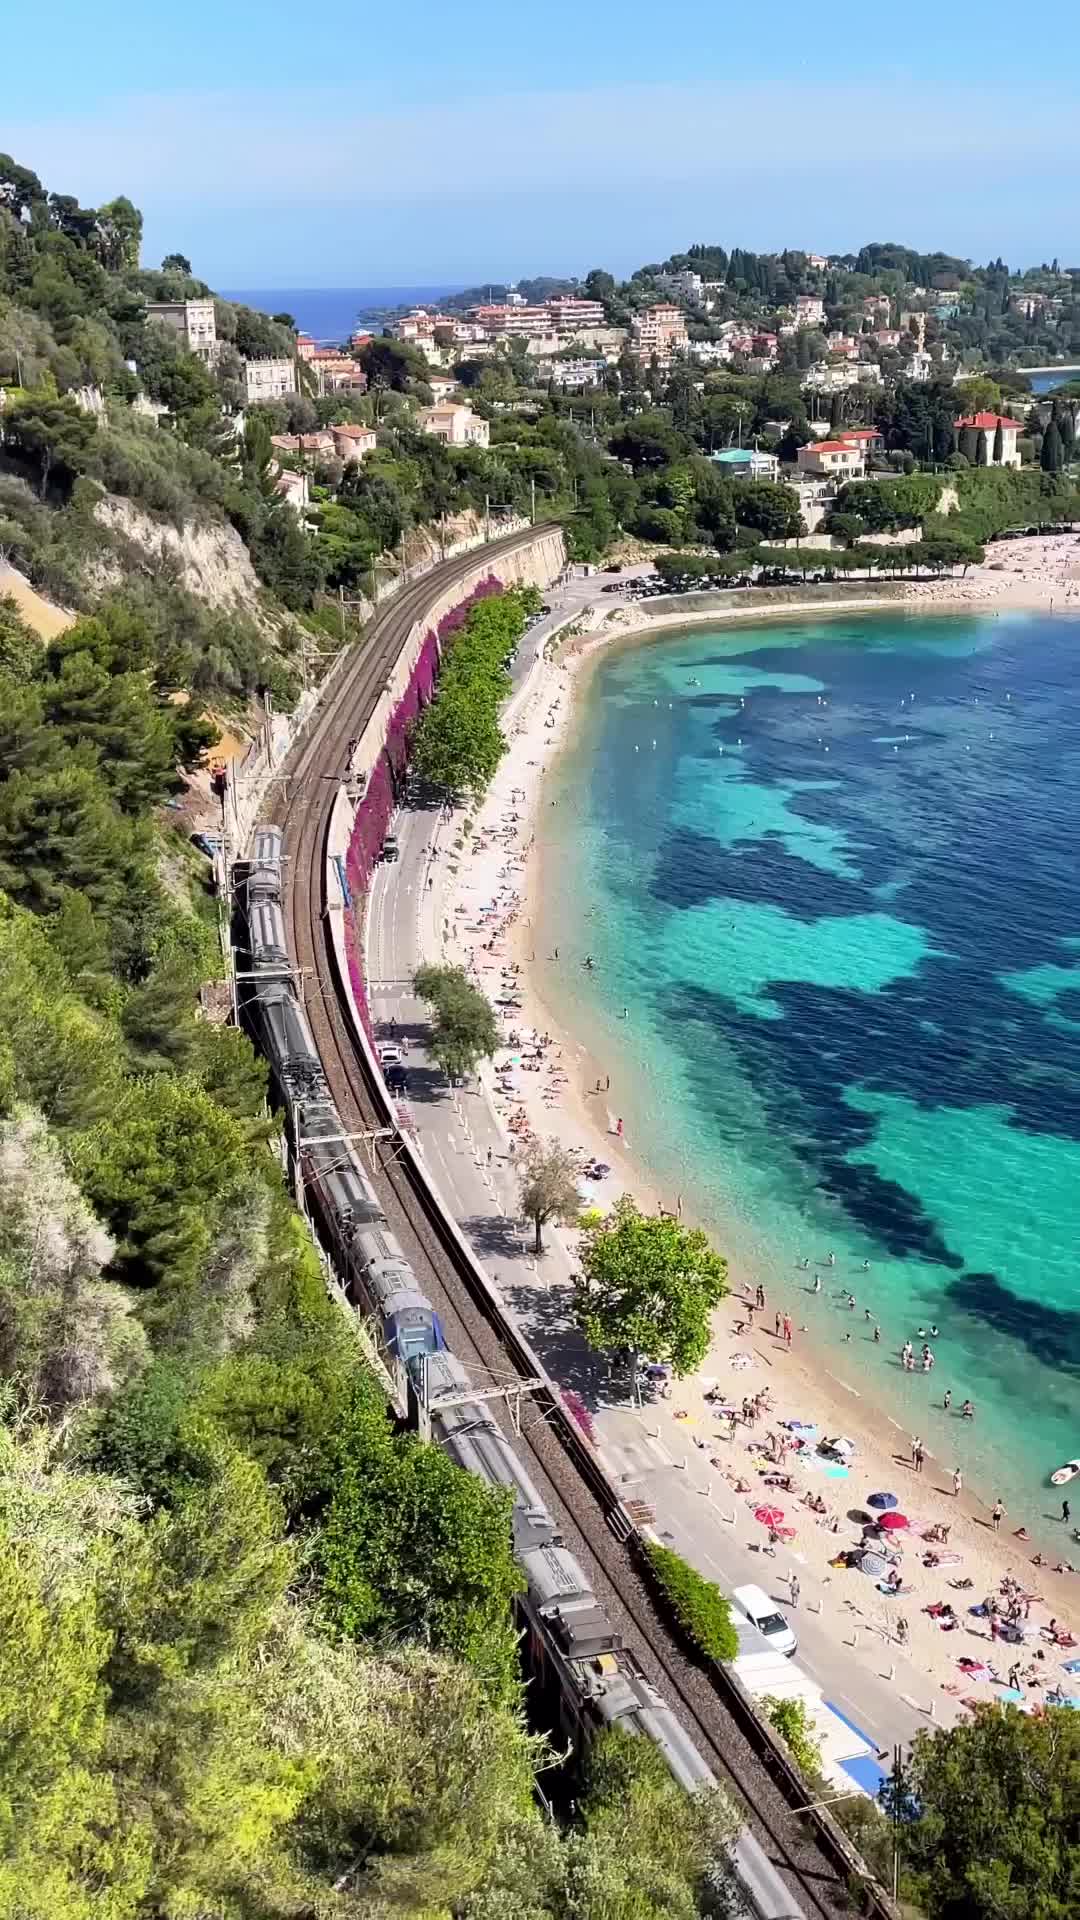 Discover Villefranche-sur-Mer, Côte d’Azur's Hidden Gem